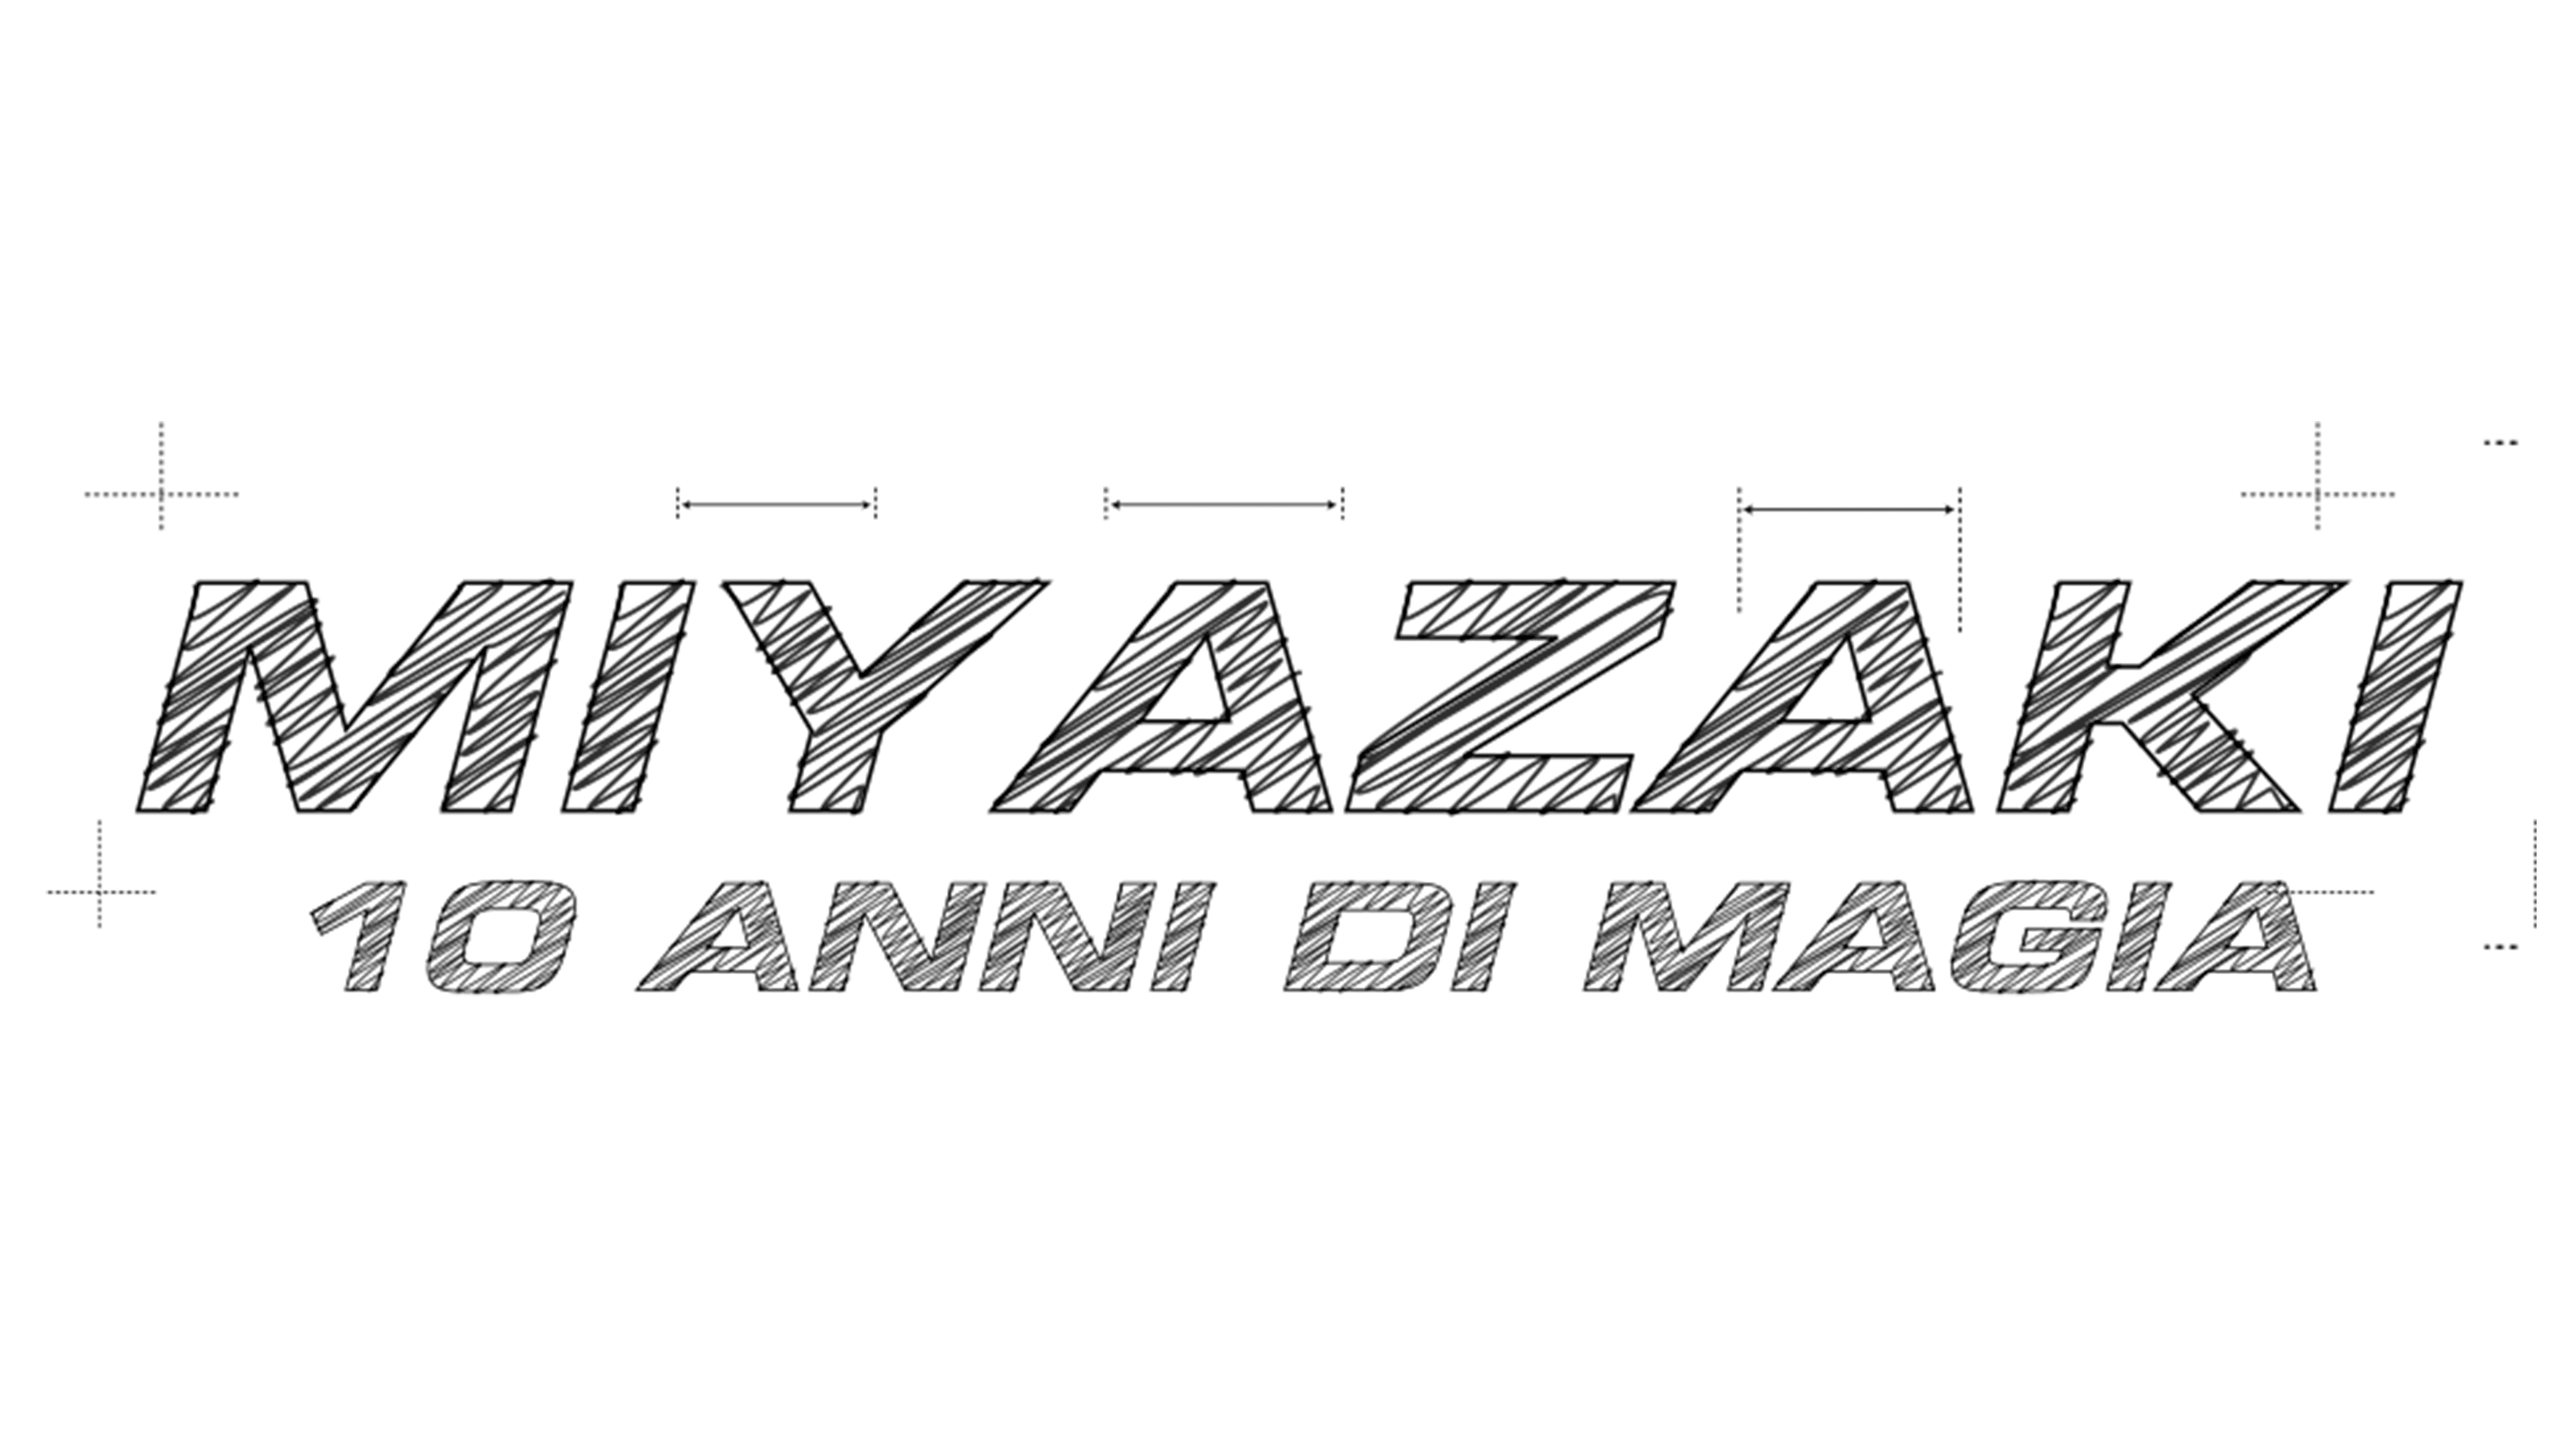 Miyazaki - 10 anni di magia